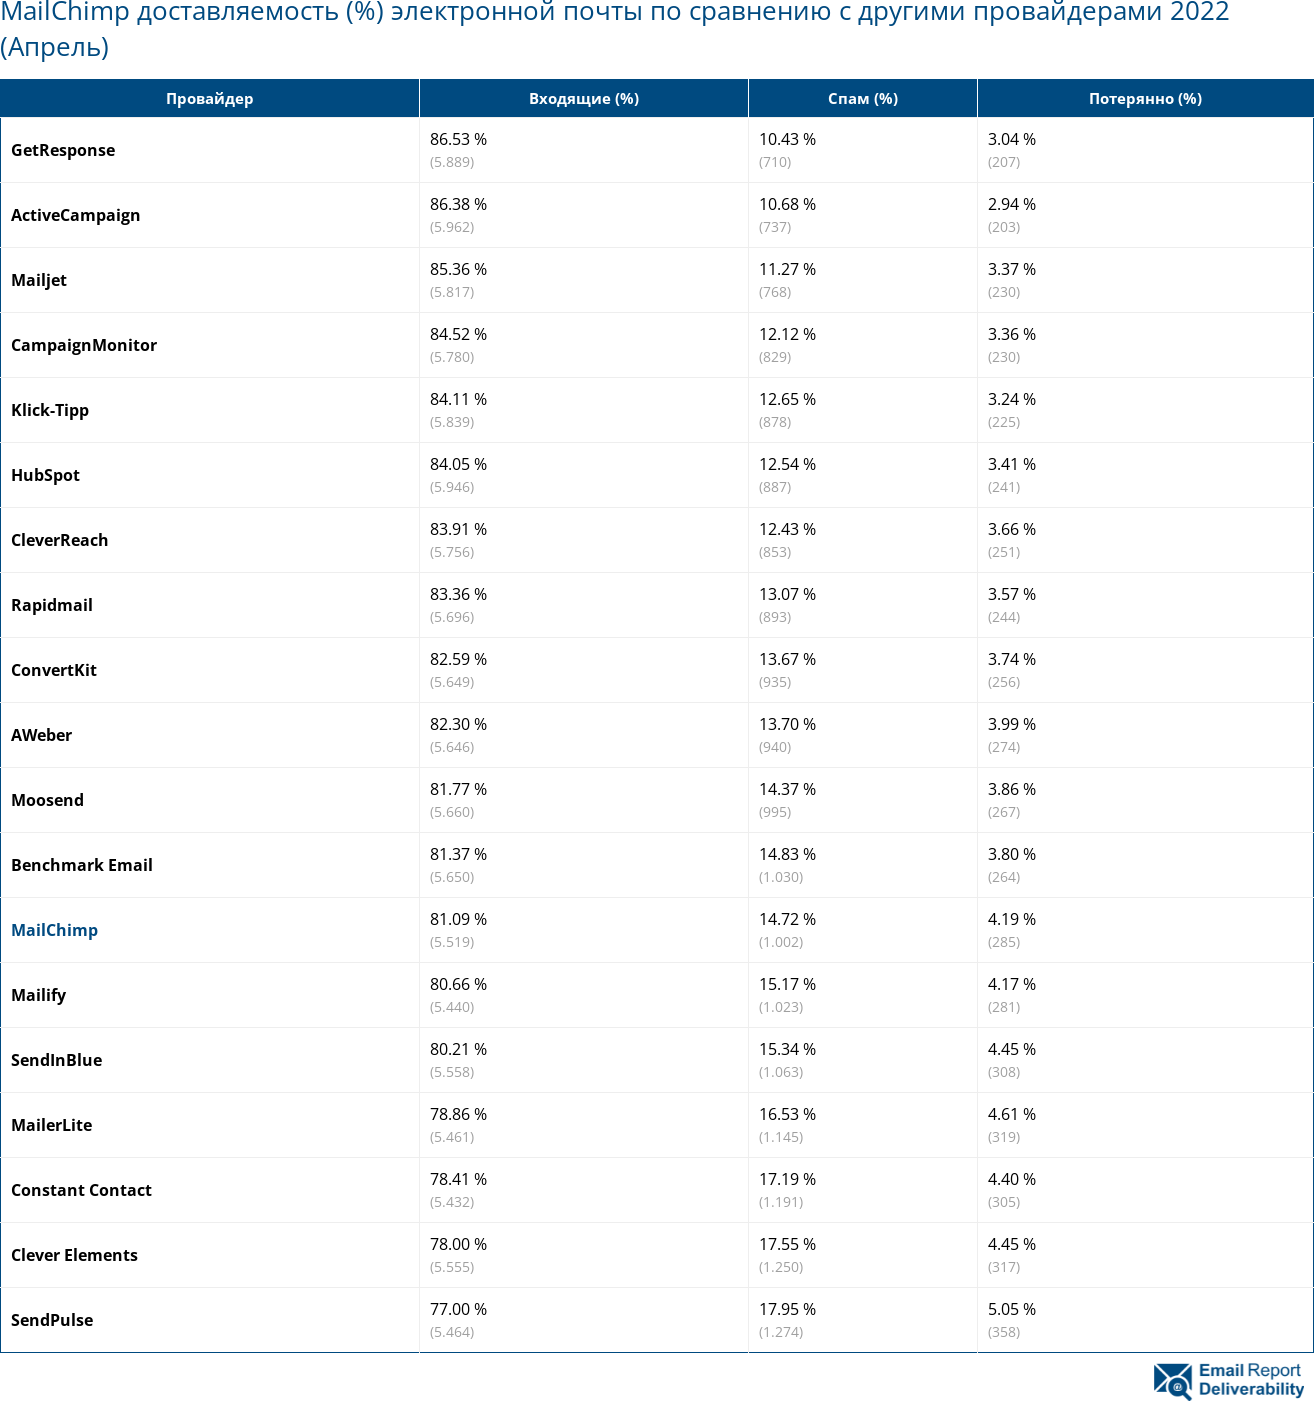 MailChimp доставляемость (%) электронной почты по сравнению с другими провайдерами 2022 (Апрель)